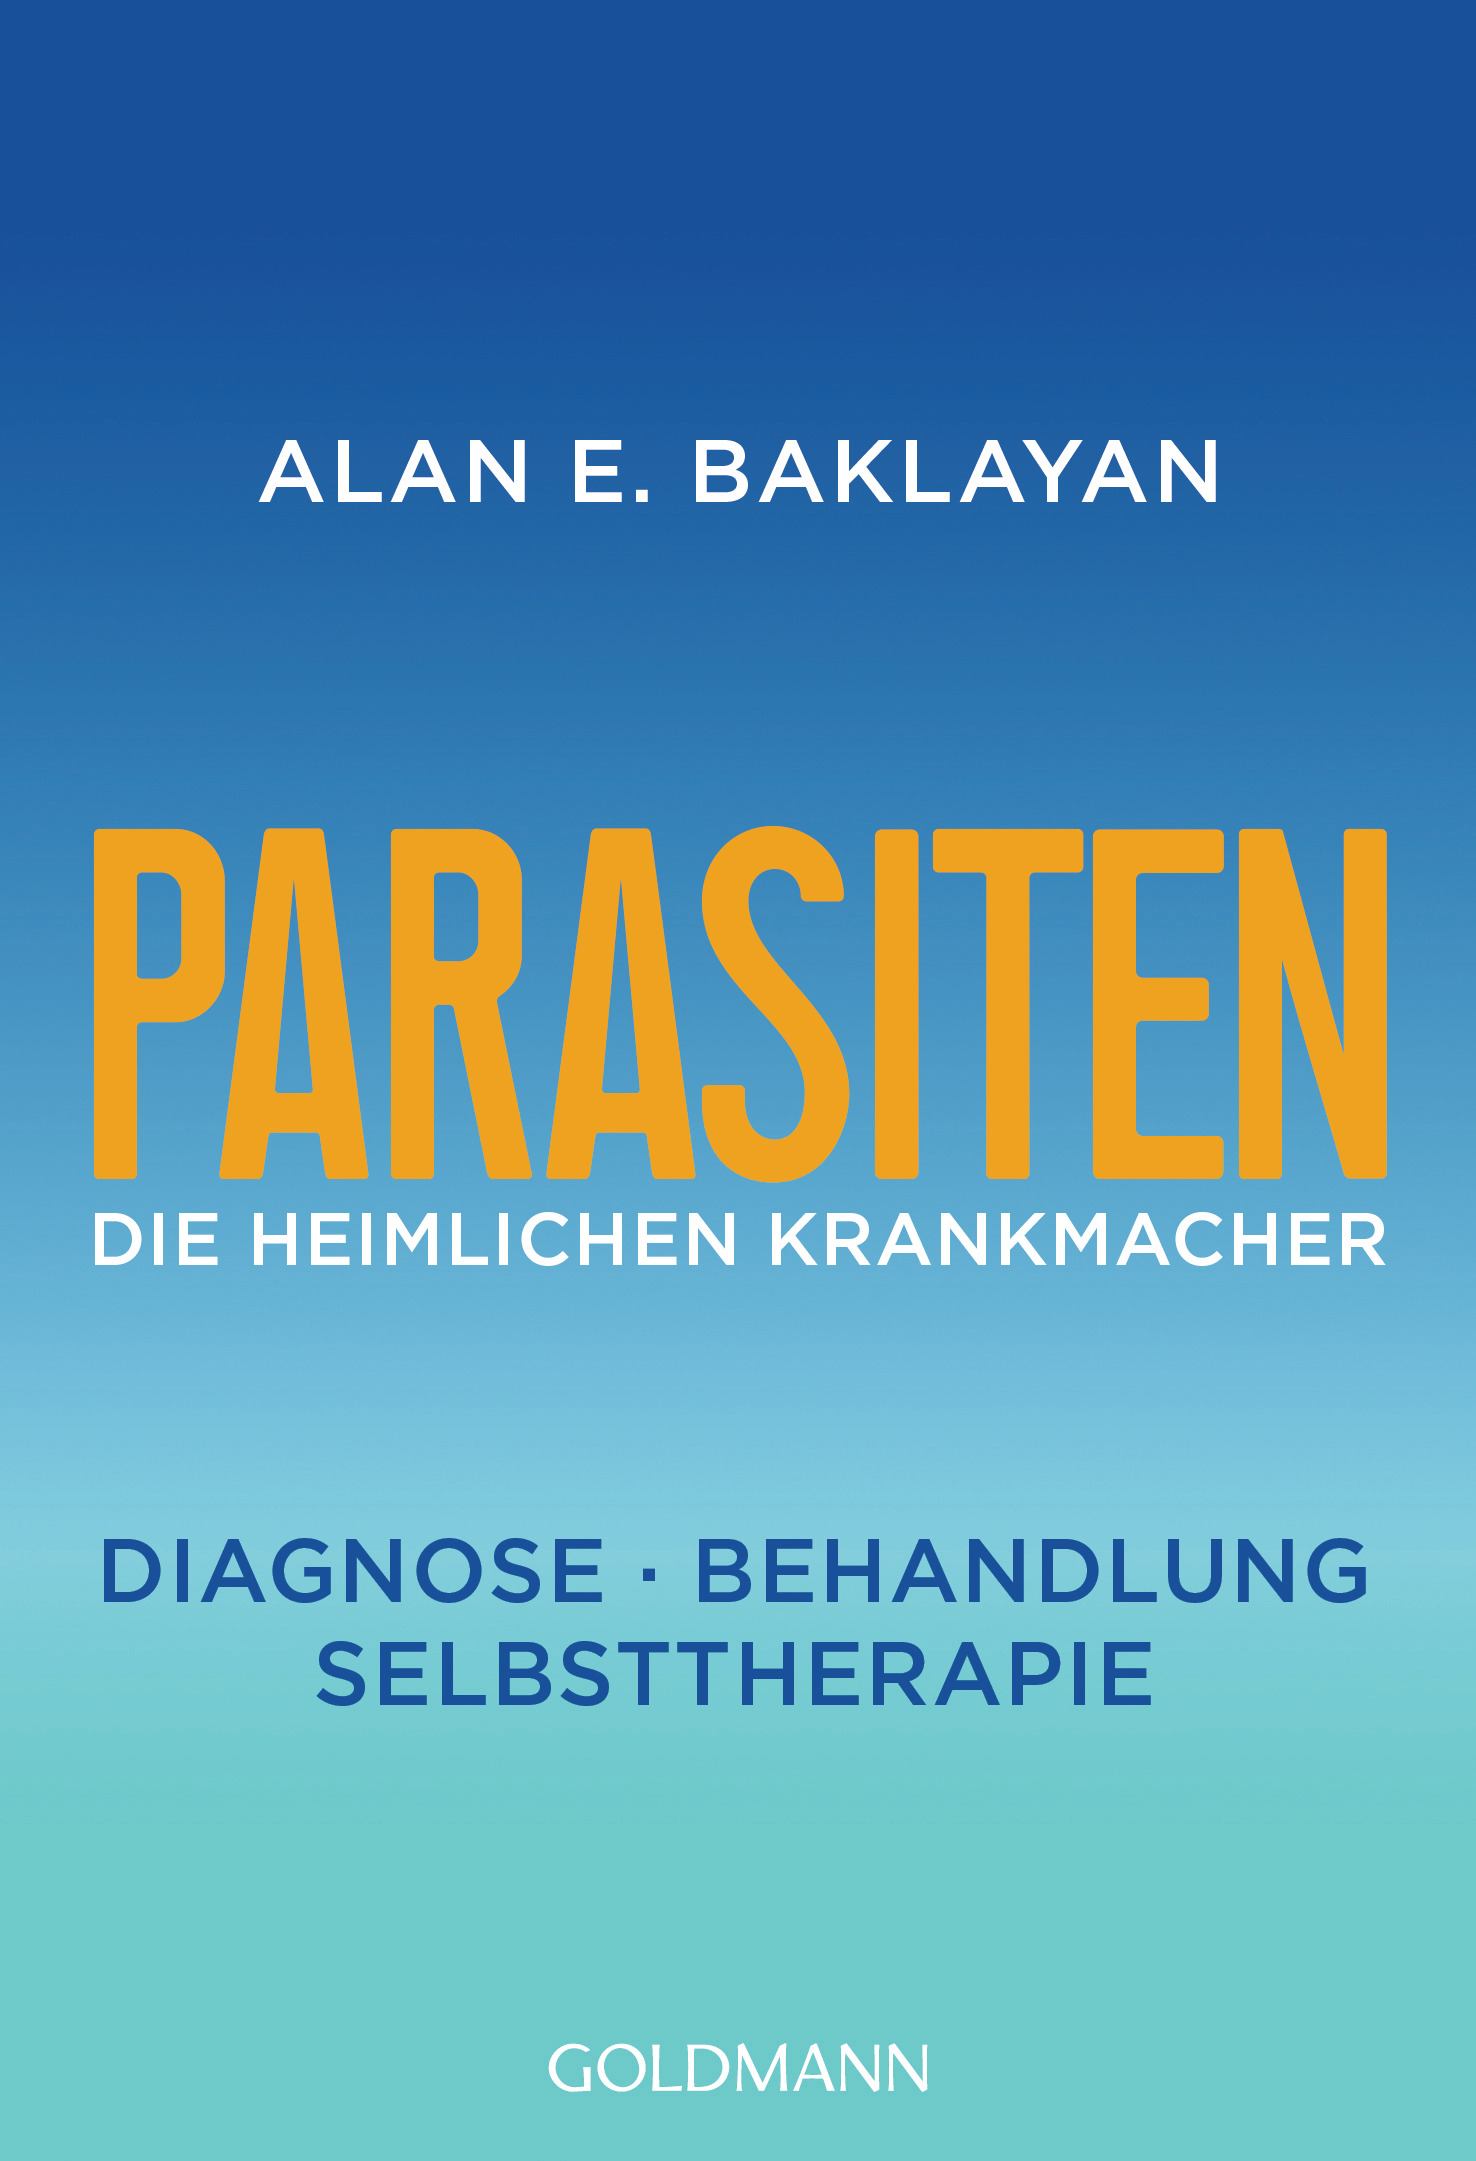 Parasiten: Die heimlichen Krankmacher von Alan E. Baklayan